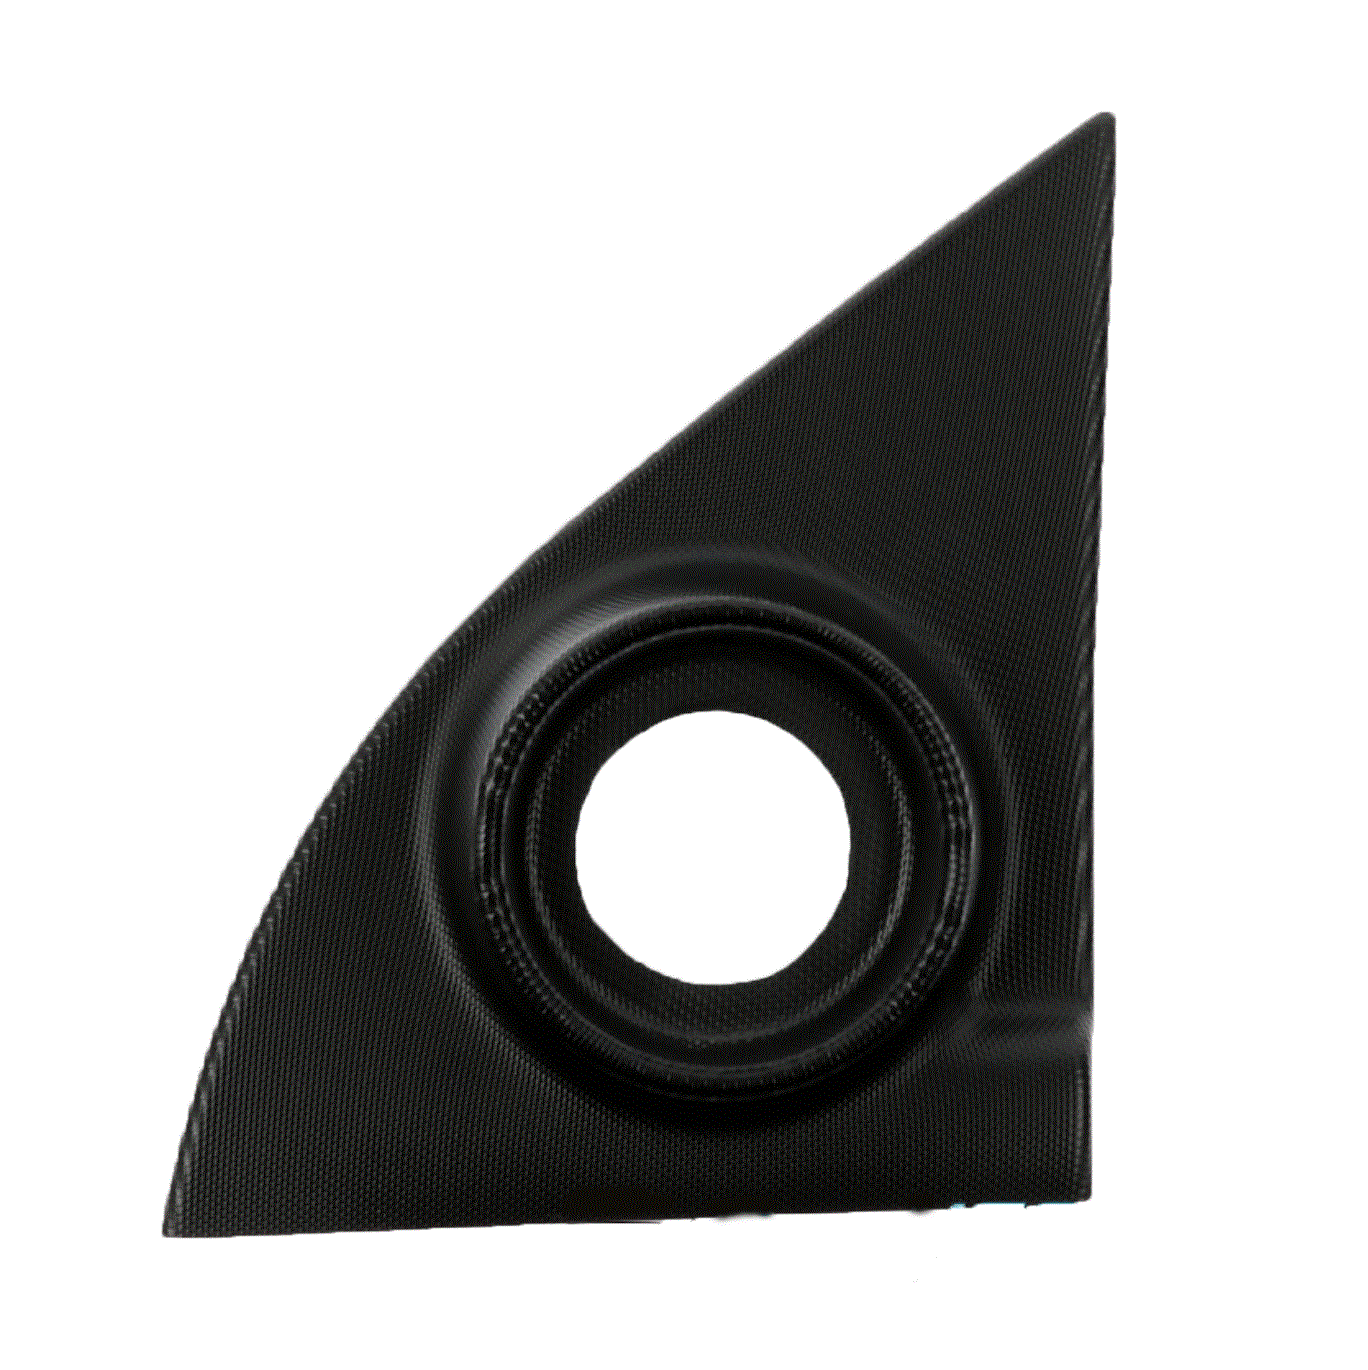 Triangle de retroviseur extérieure gauche Microcar MGO DUE Mister VSP